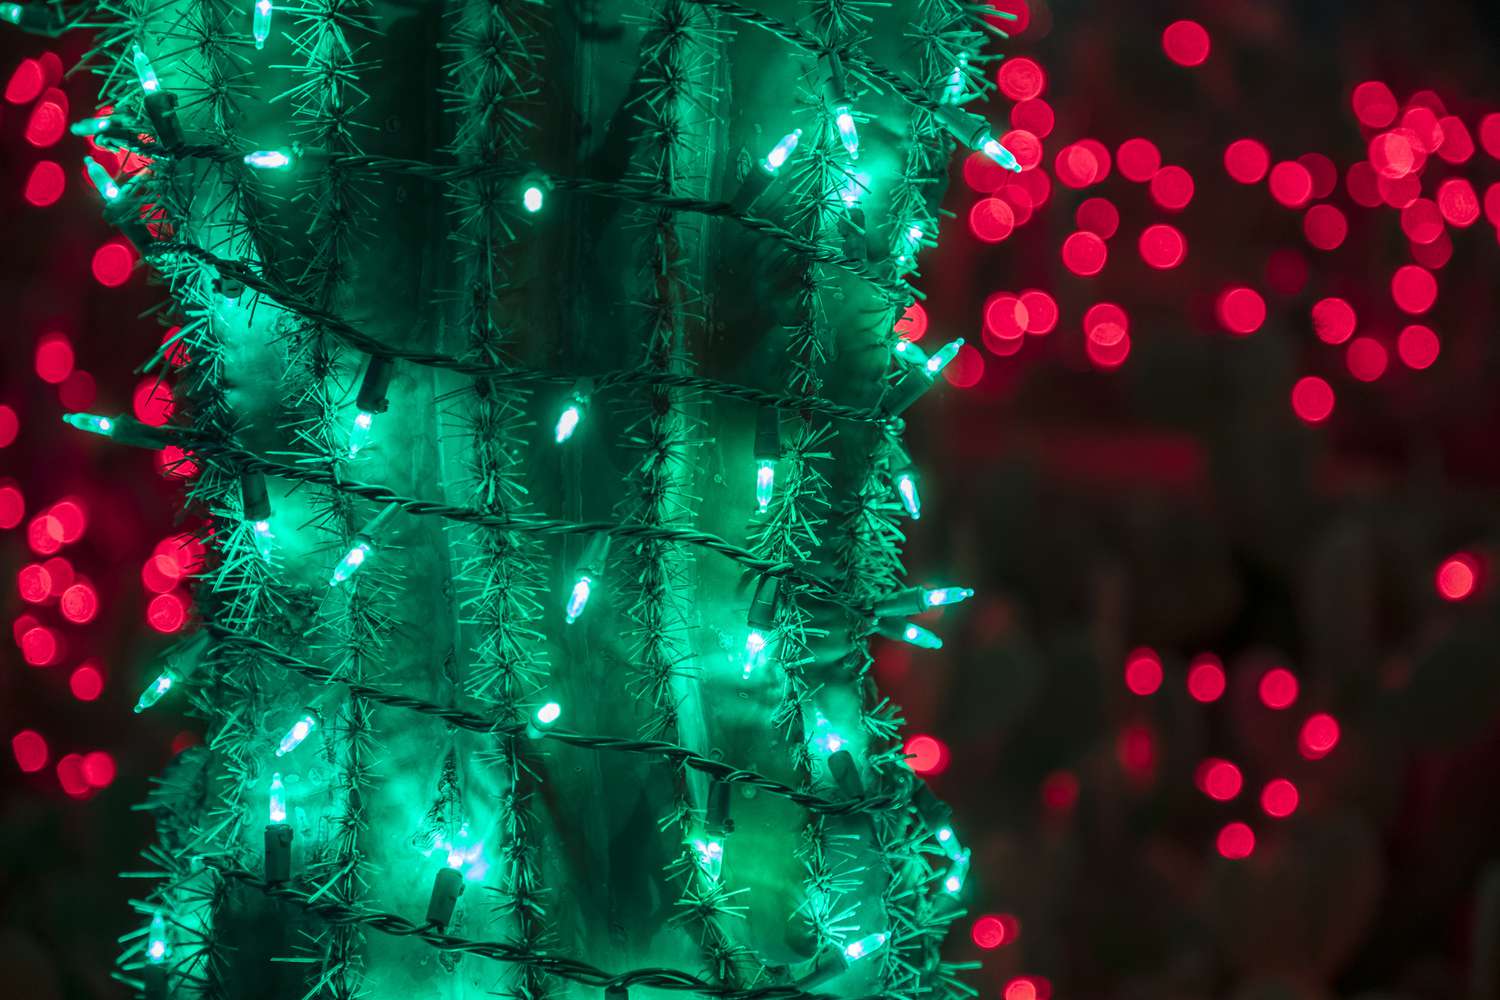 Kaktus in weihnachtlichem Grün geschmückt